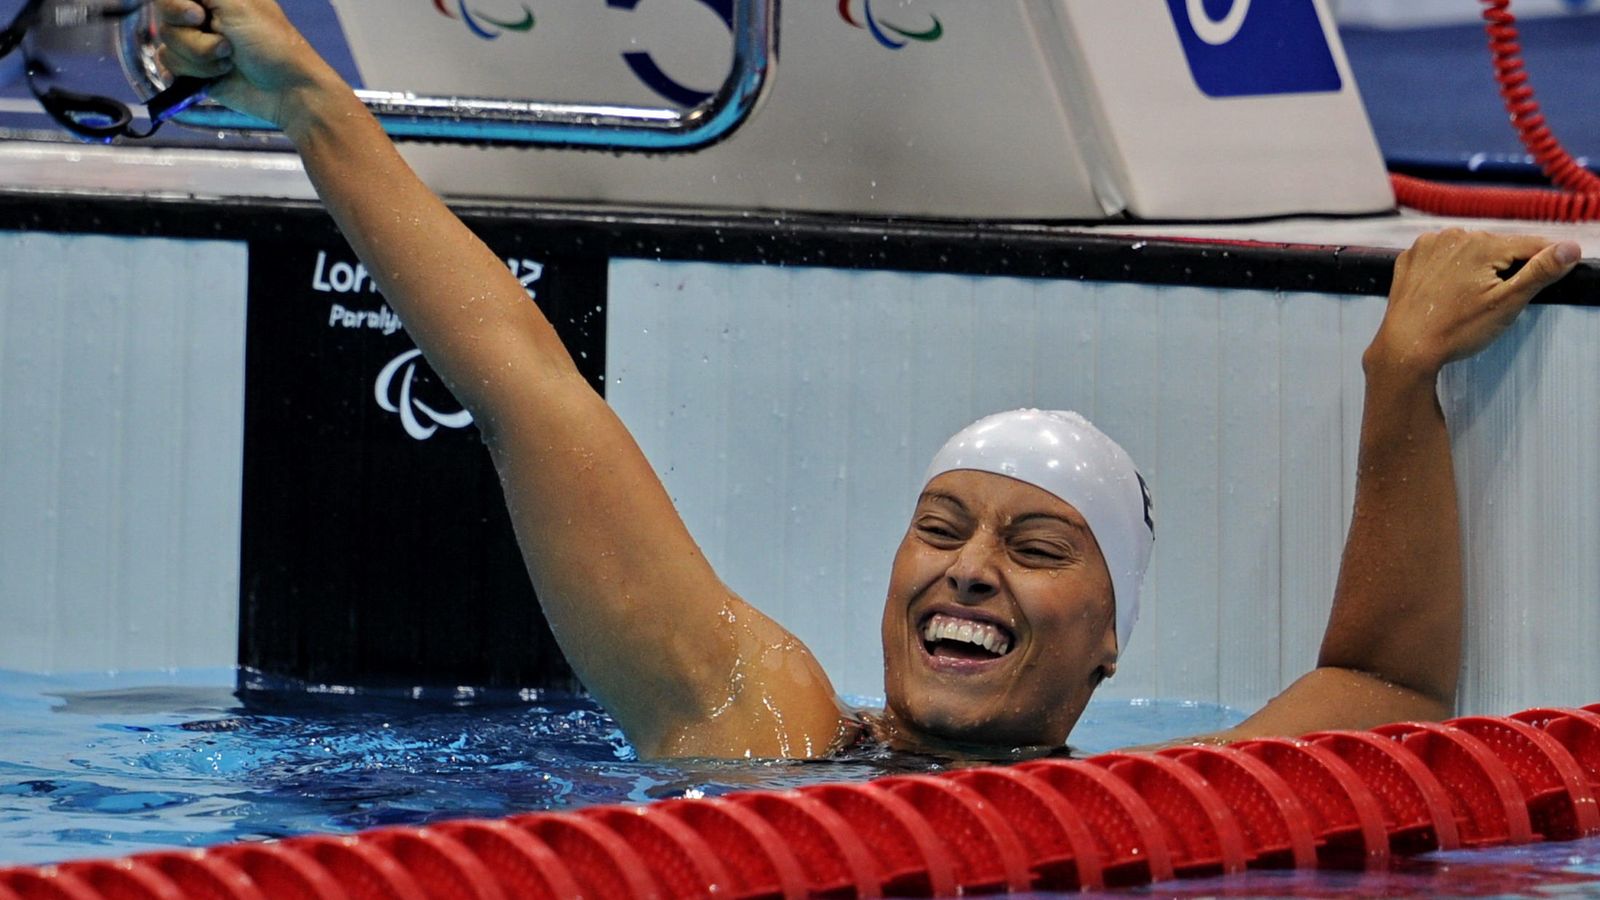 Foto: Teresa Perales es una de las deportistas con más medallas en la historia de los Juegos Paralímpicos. Atento a sus consejos. (Corbis)